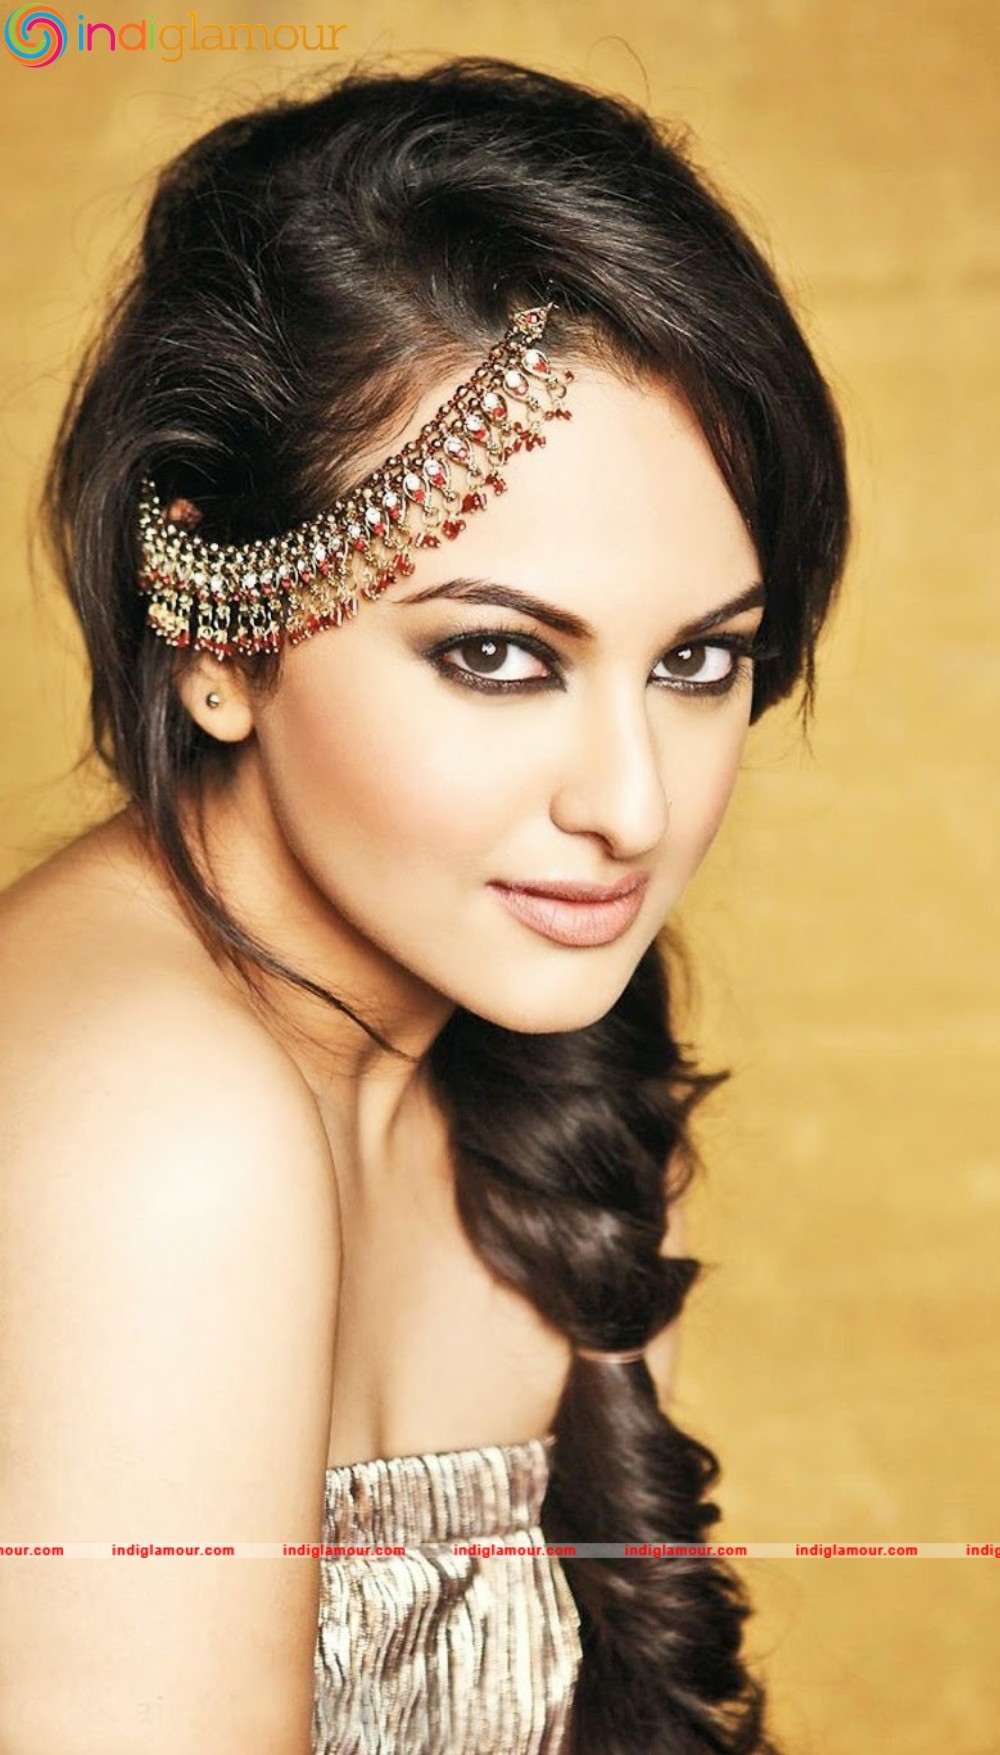 Sonakshi Sinha Actress HD photos,images,pics and stills-indiglamour.com  #469979